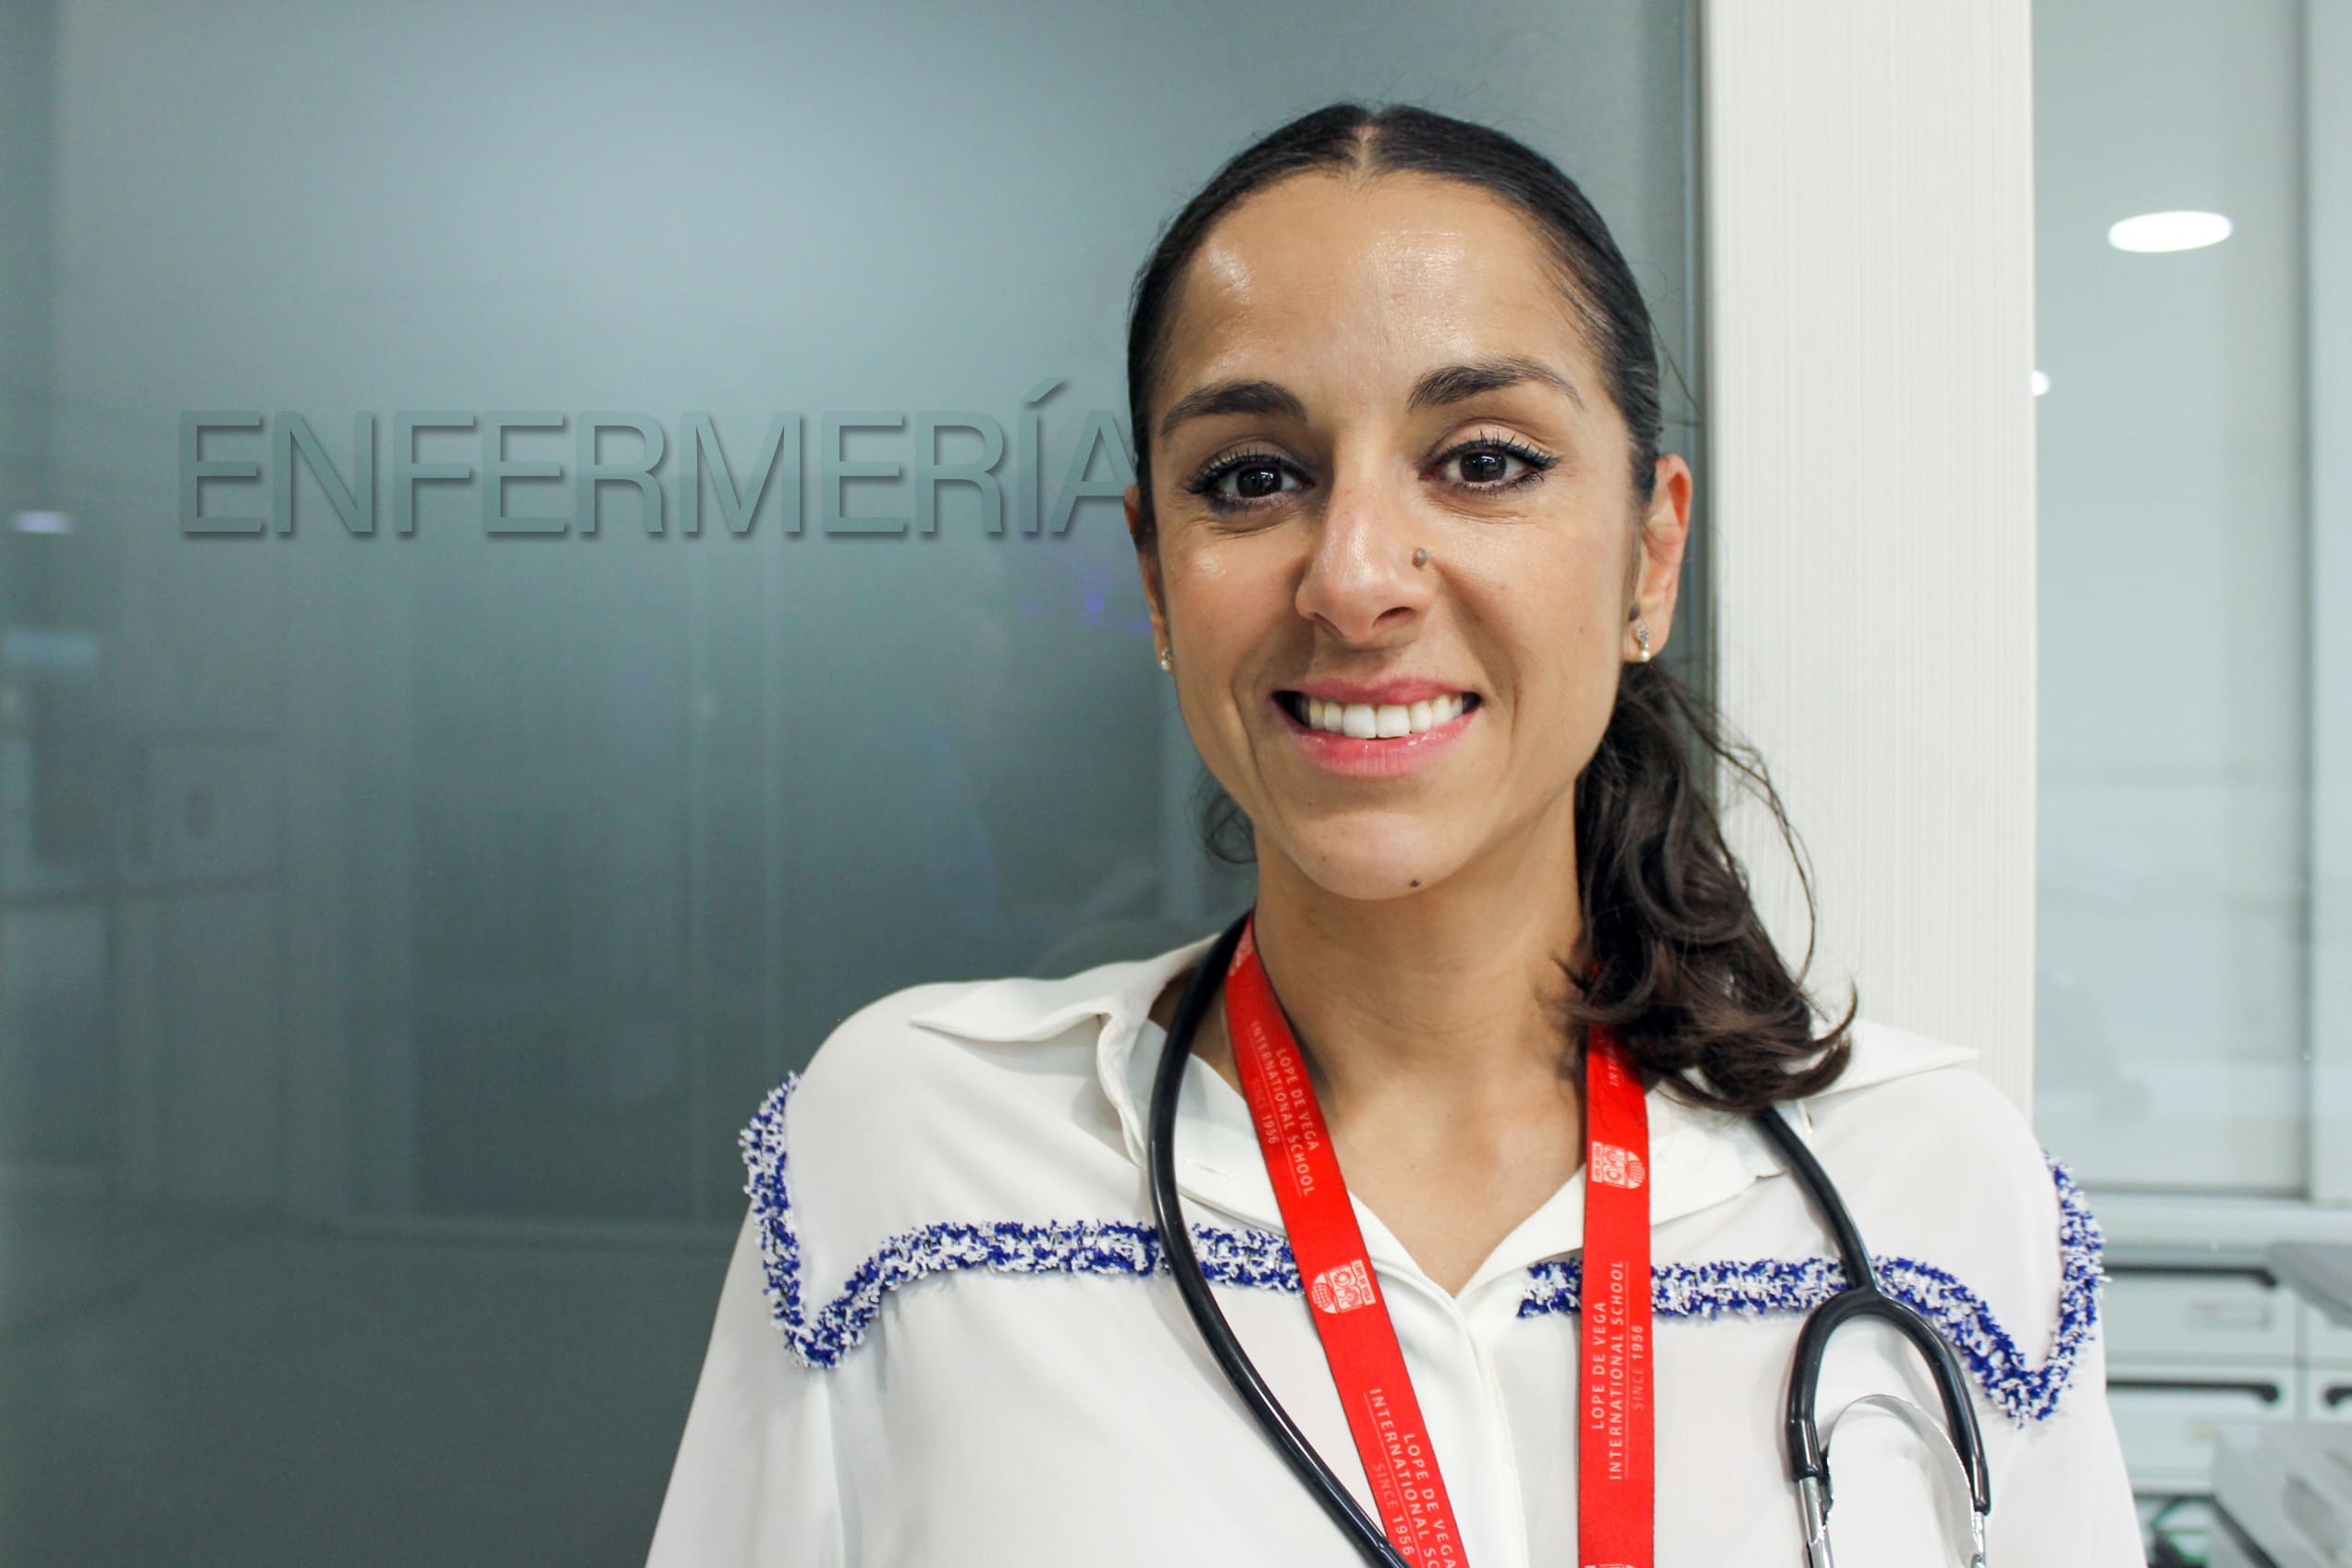 enfermería escolar - Ana Hoyo - enfermera Lope de Vega